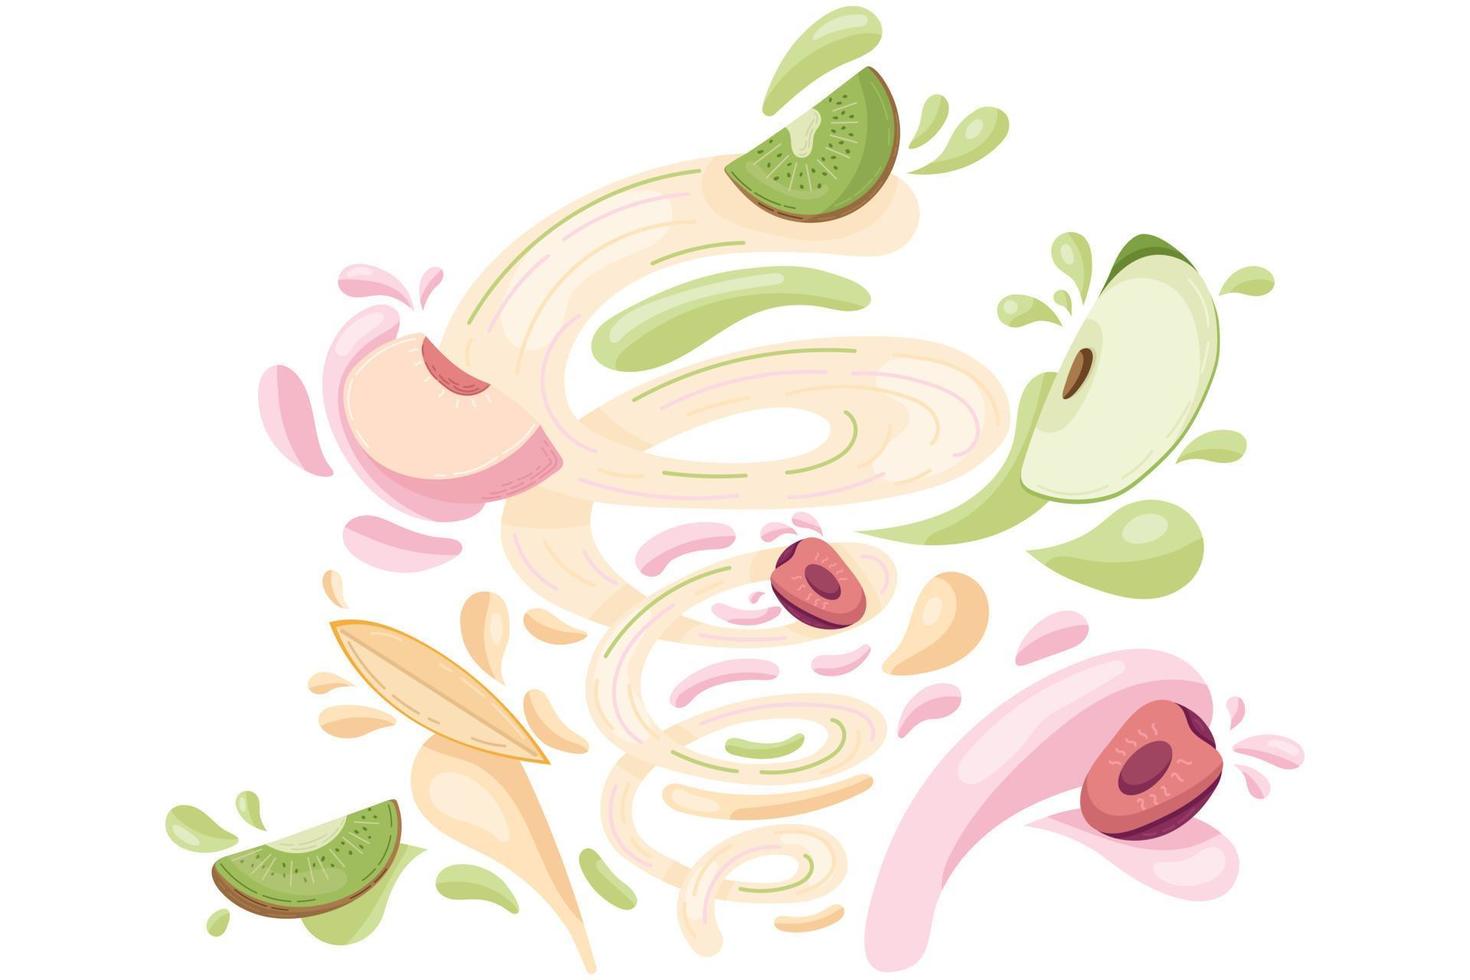 fazendo smoothie de frutas frescas, preparação de alimentos orgânicos saudáveis. suco de kiwi, pêssego, cereja, maçã e manga em um estilo cartoon plana. ilustração vetorial vetor